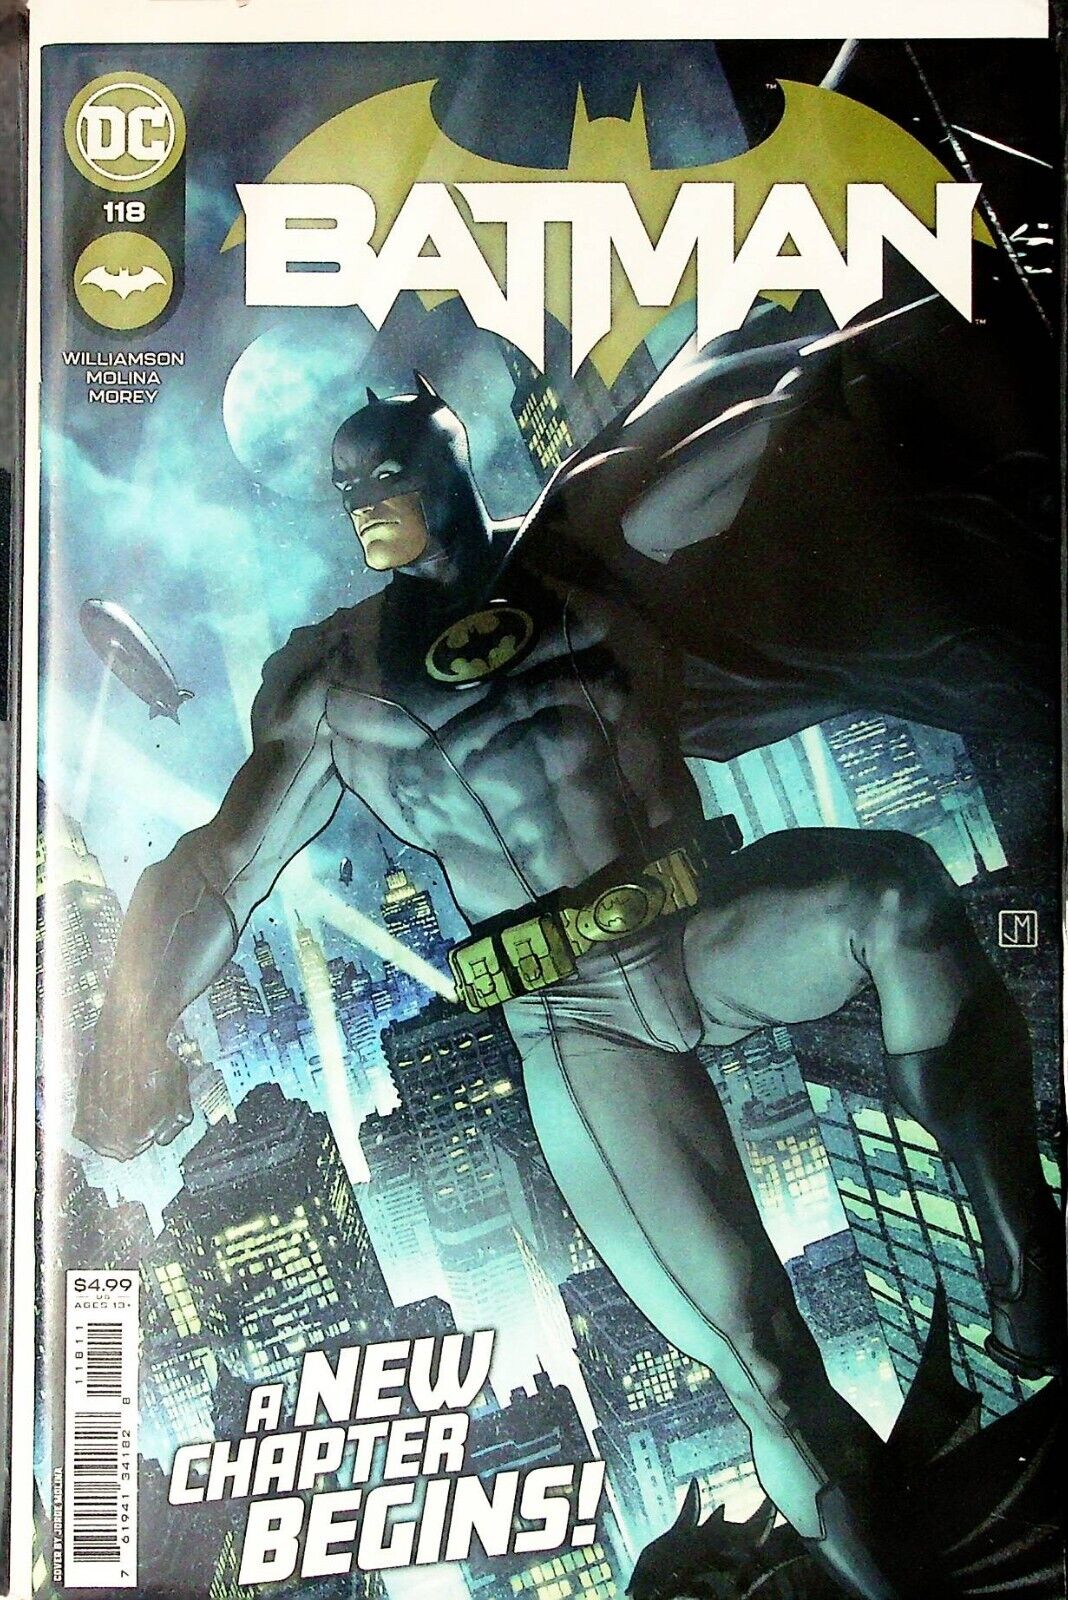 39147: DC Comics BATMAN #118 NM- Grade